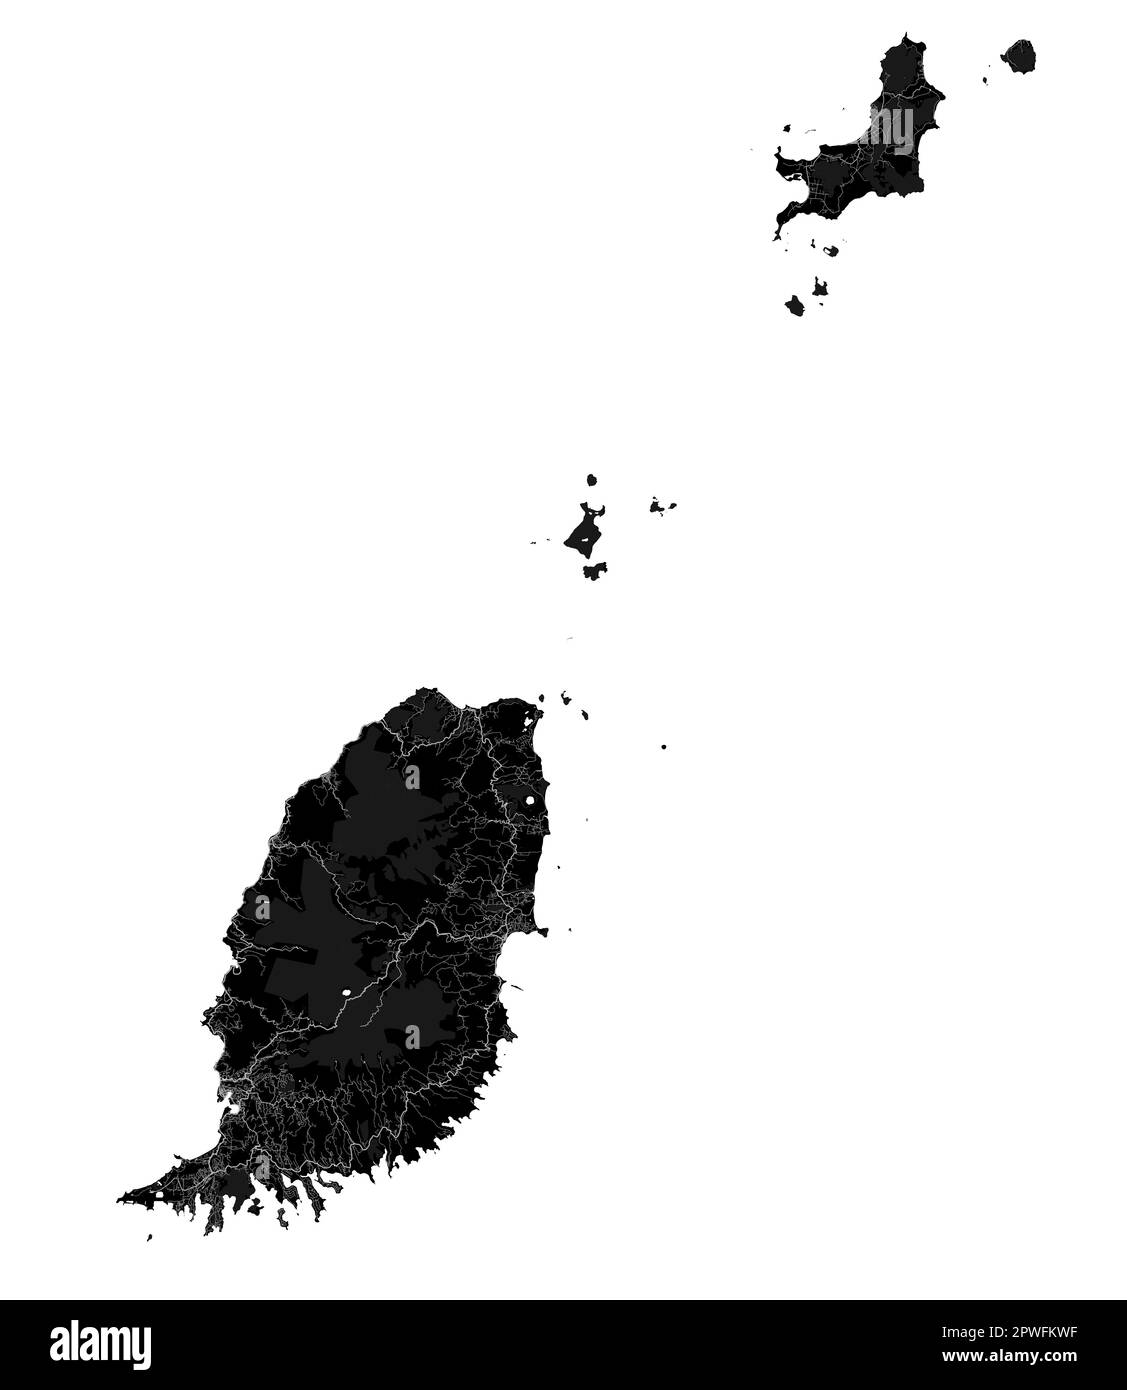 Mappa di Grenada nera, isole caraibiche paese. Mappa dettagliata con confine amministrativo, costa, mare e foreste, città e strade. Illustrazione Vettoriale